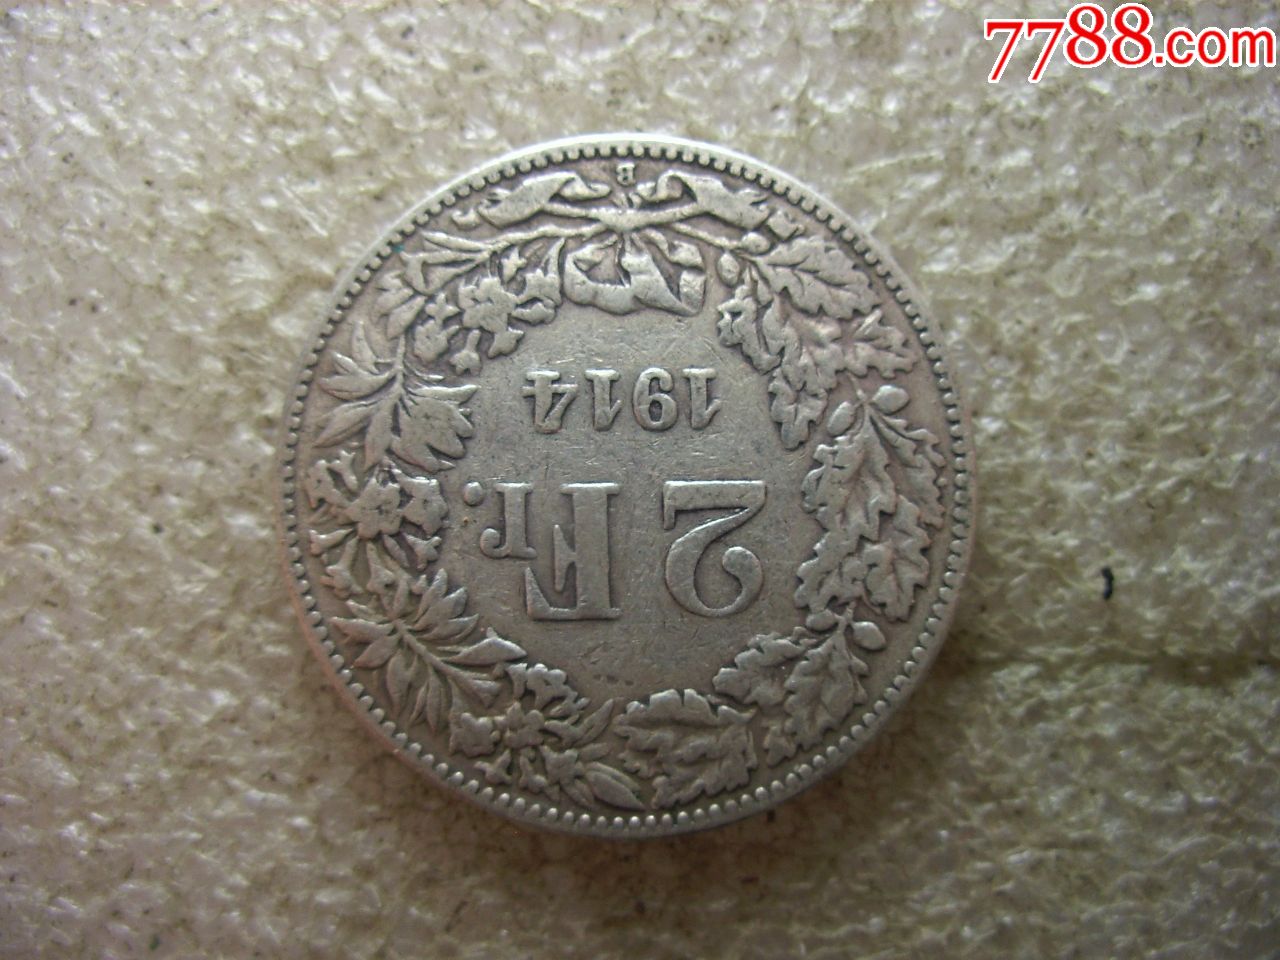 1914原味美品瑞士2法郎银币3枚